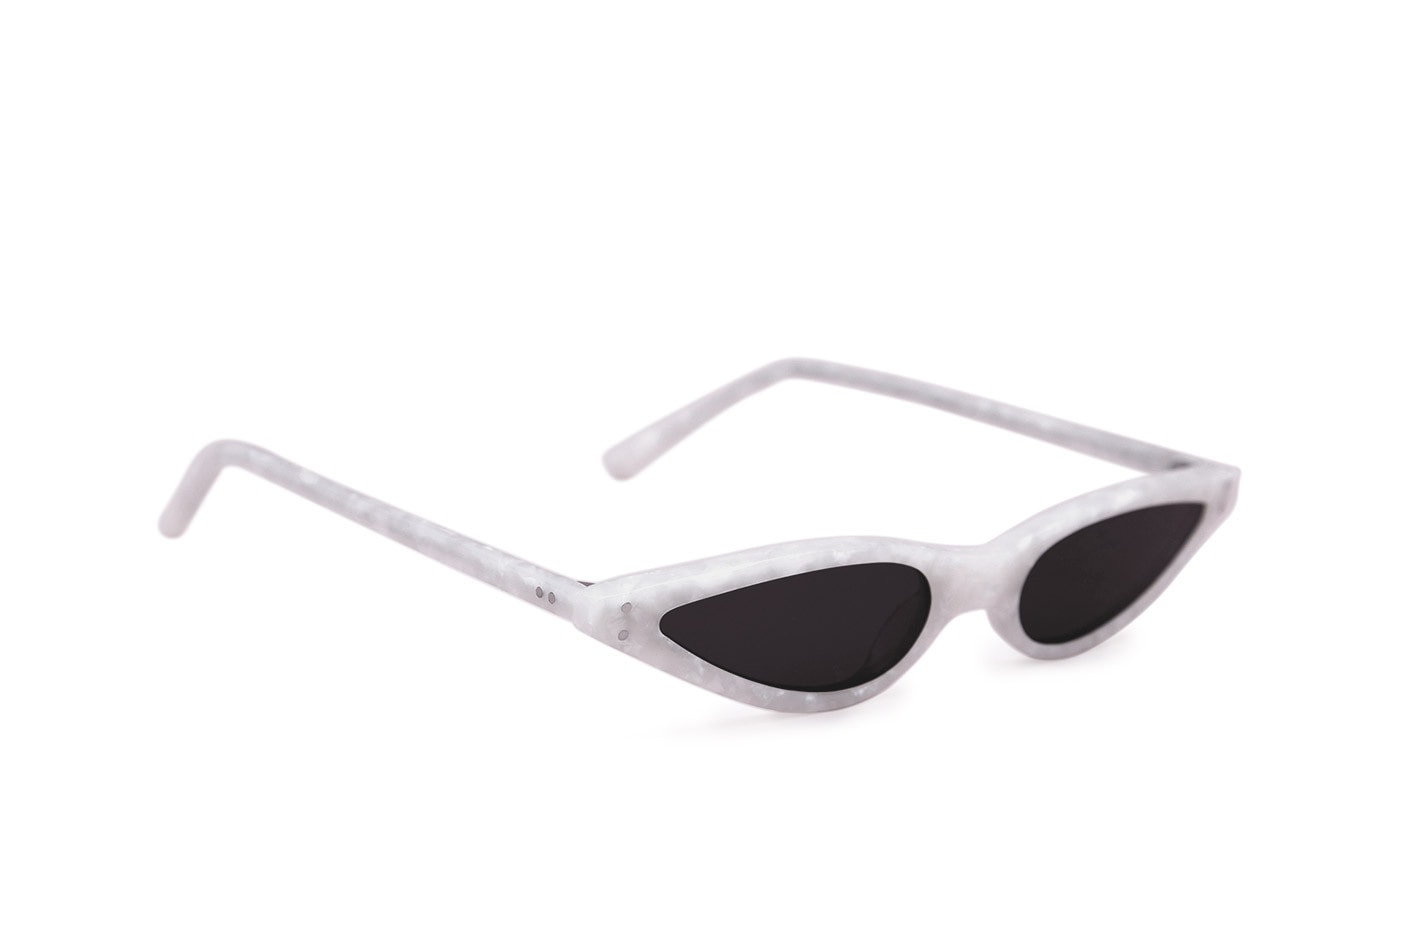 George Keburia Sunglasses Shades Futuristic Statement Small Sunglasses Retro Frames Plastic White Marble